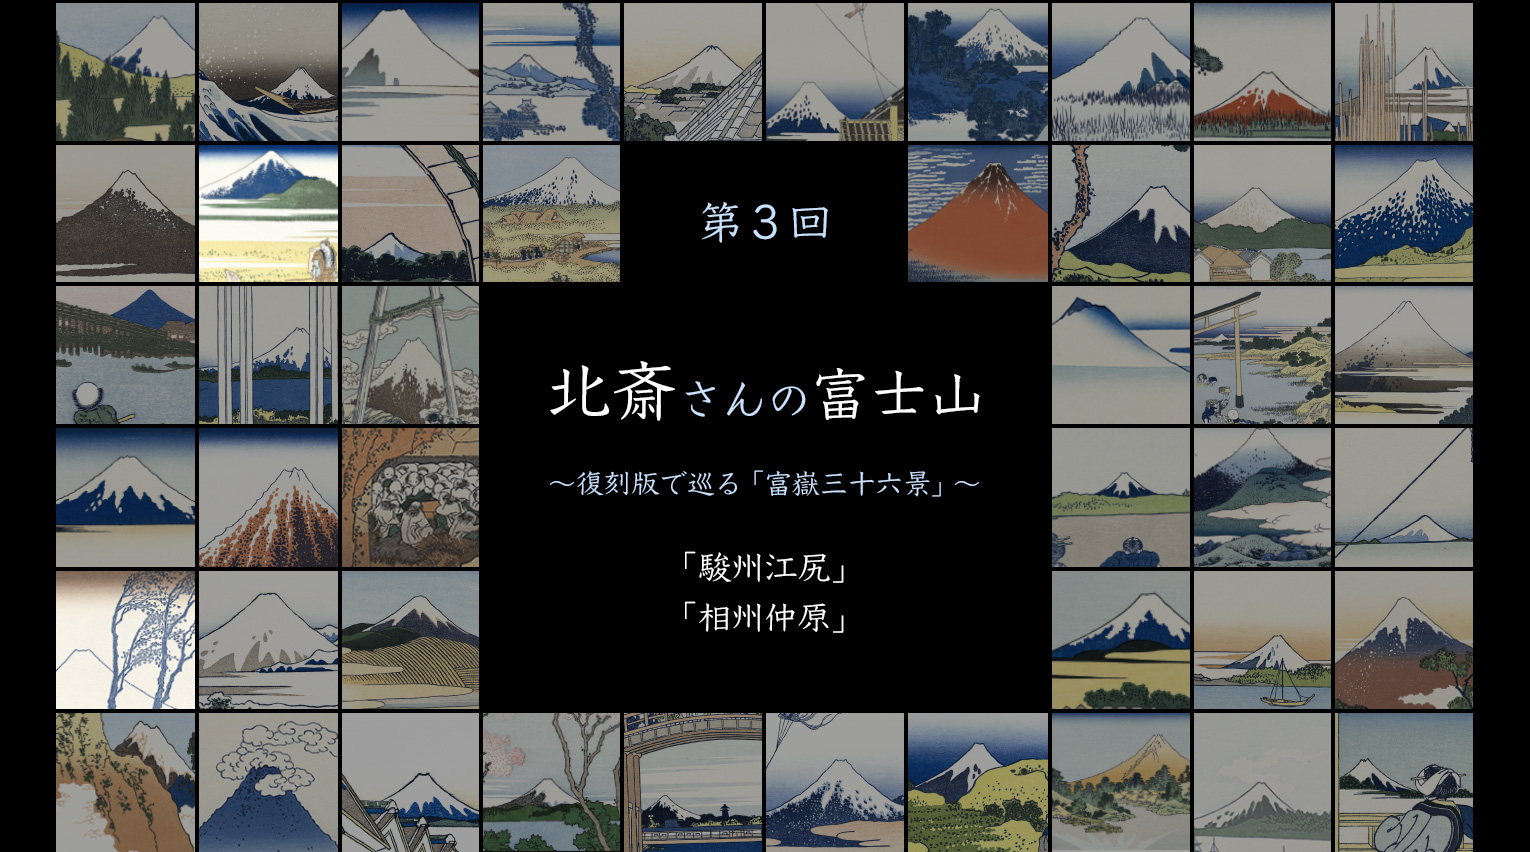 北斎さんの富士山 〜復刻版で巡る「富嶽三十六景」〜 (3)【PR】